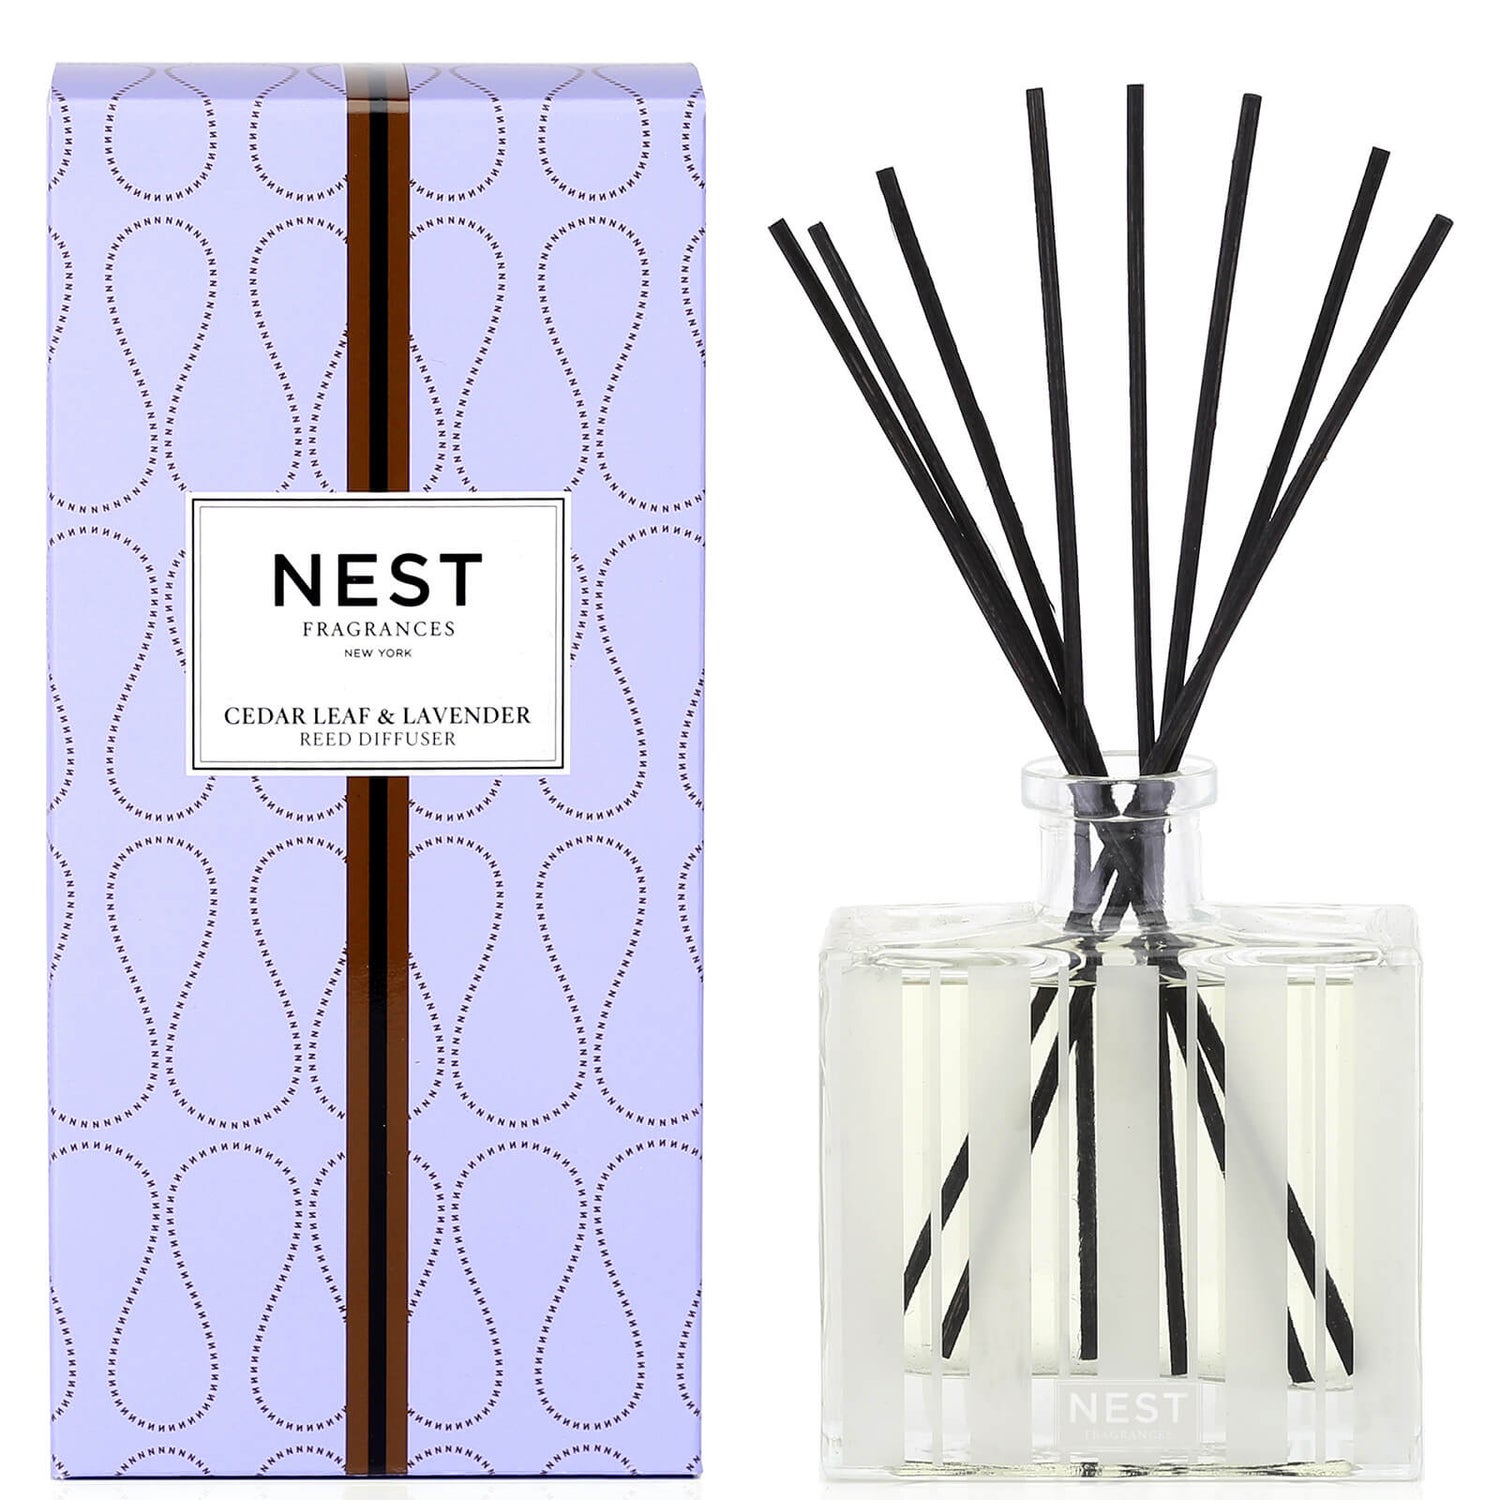 NEST Fragrances Cedar Leaf and Lavender Reed Diffuser